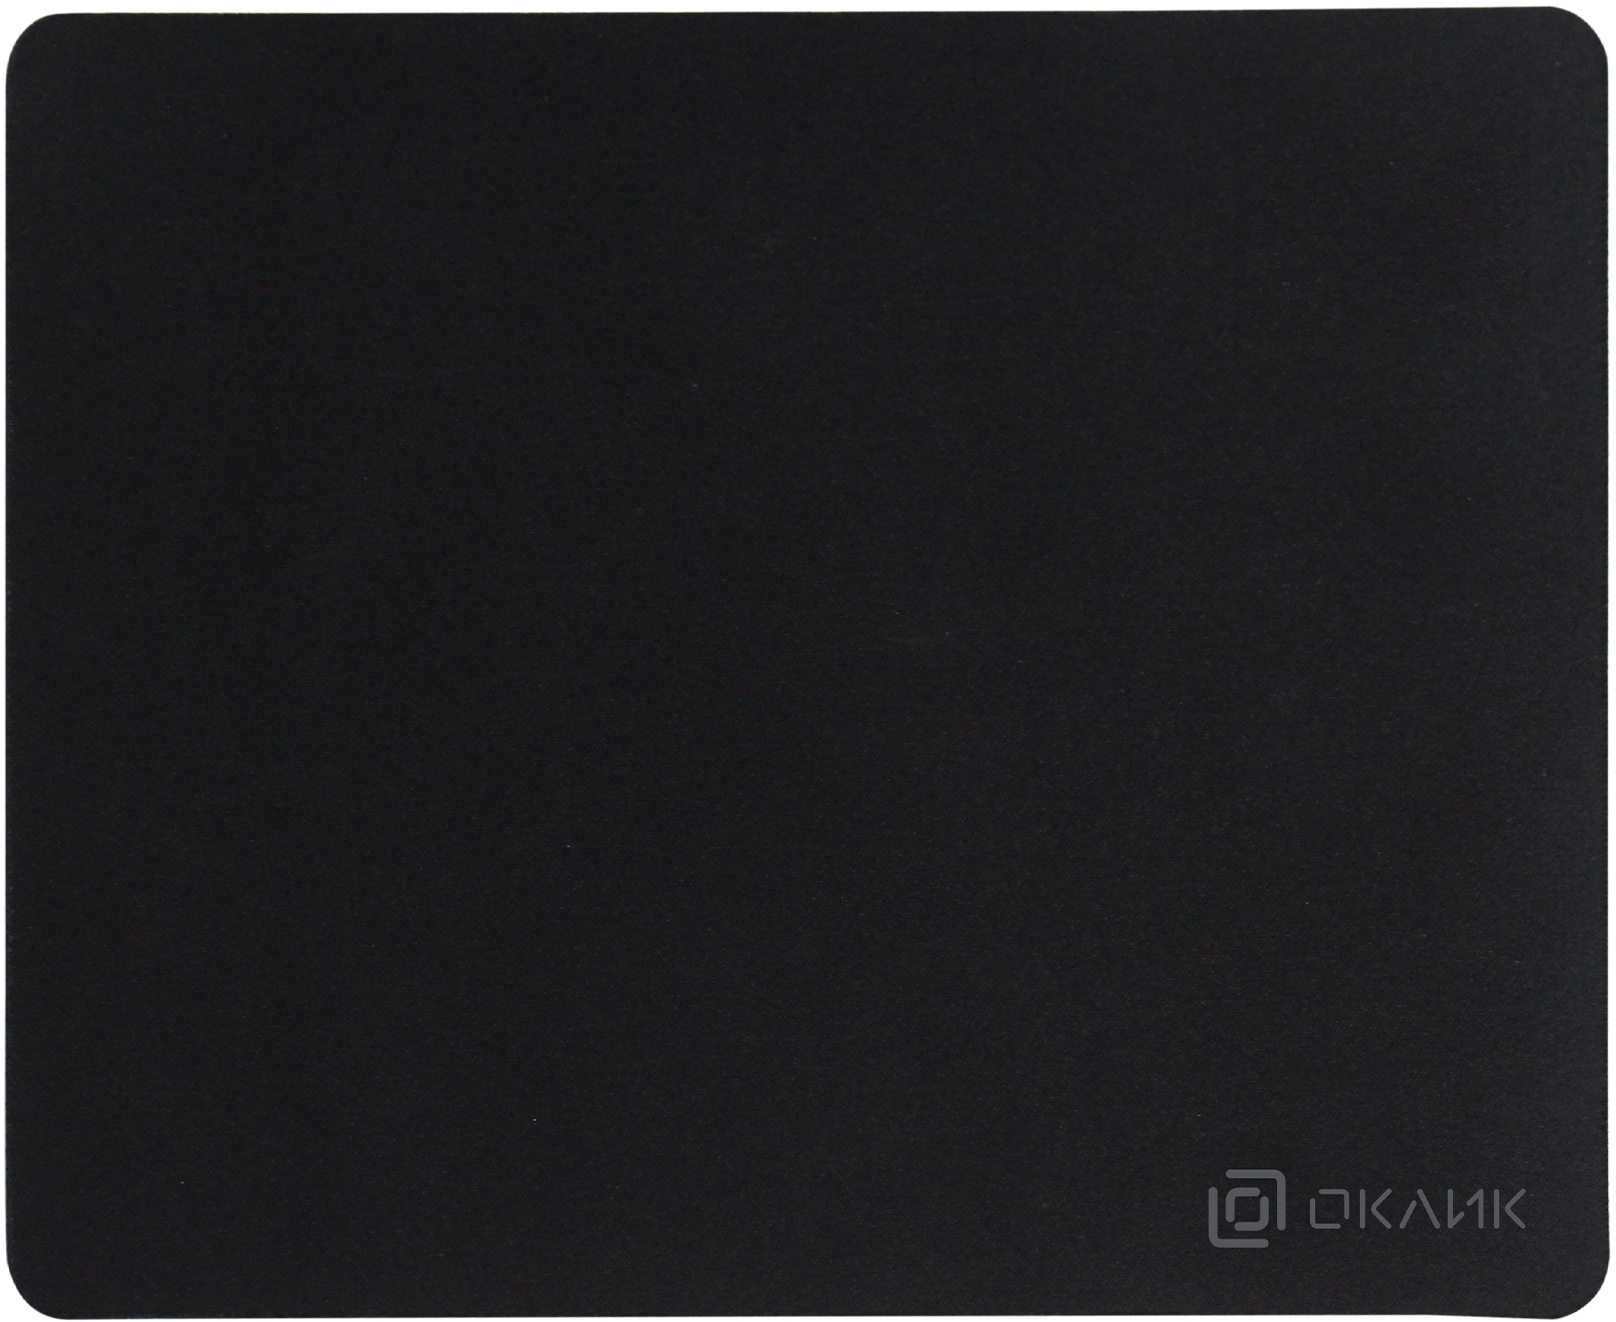 Коврик для мыши Oklick OK-T280, 280x225x2mm, черный (OK-T280)